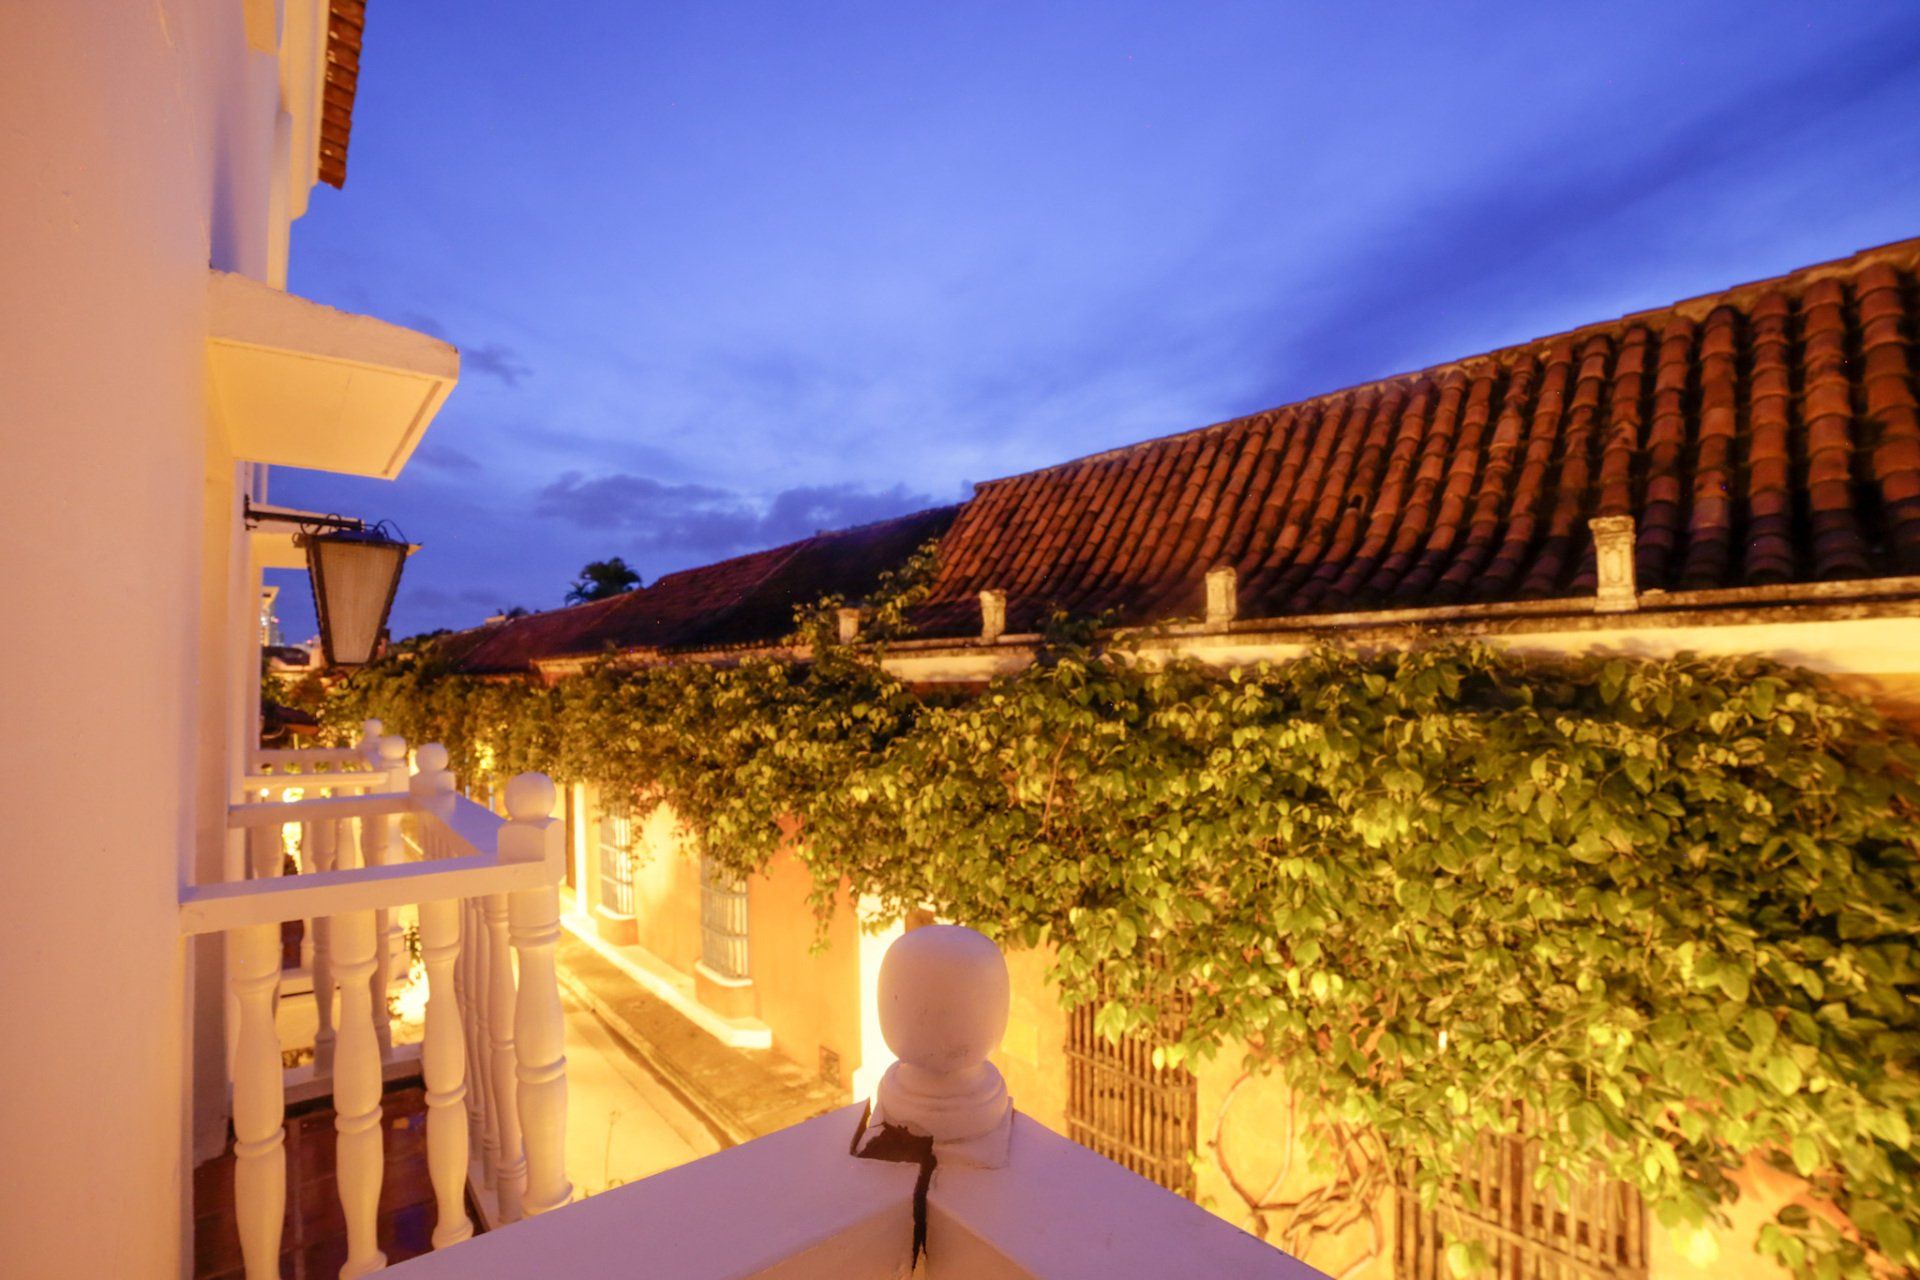 Fotos do Hotel Kartaxa em Cartagena